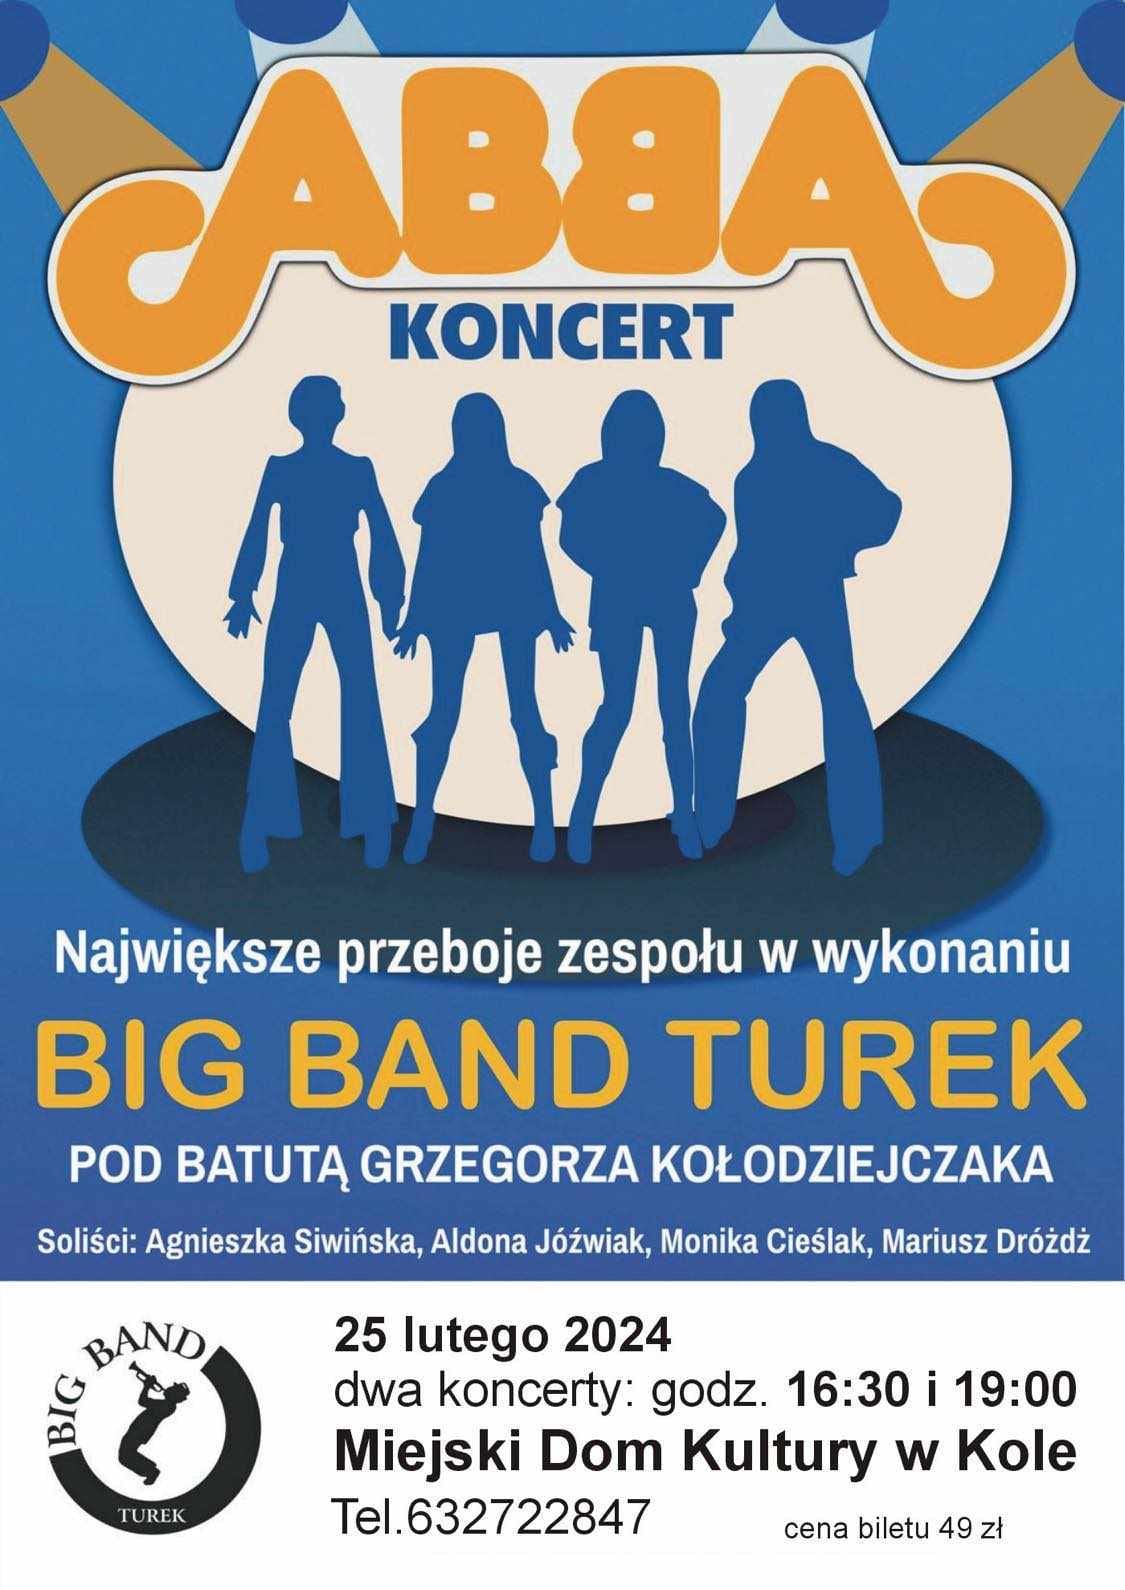 Plakat informujący o koncercie z piosenkami z repertuaru zespołu ABBA